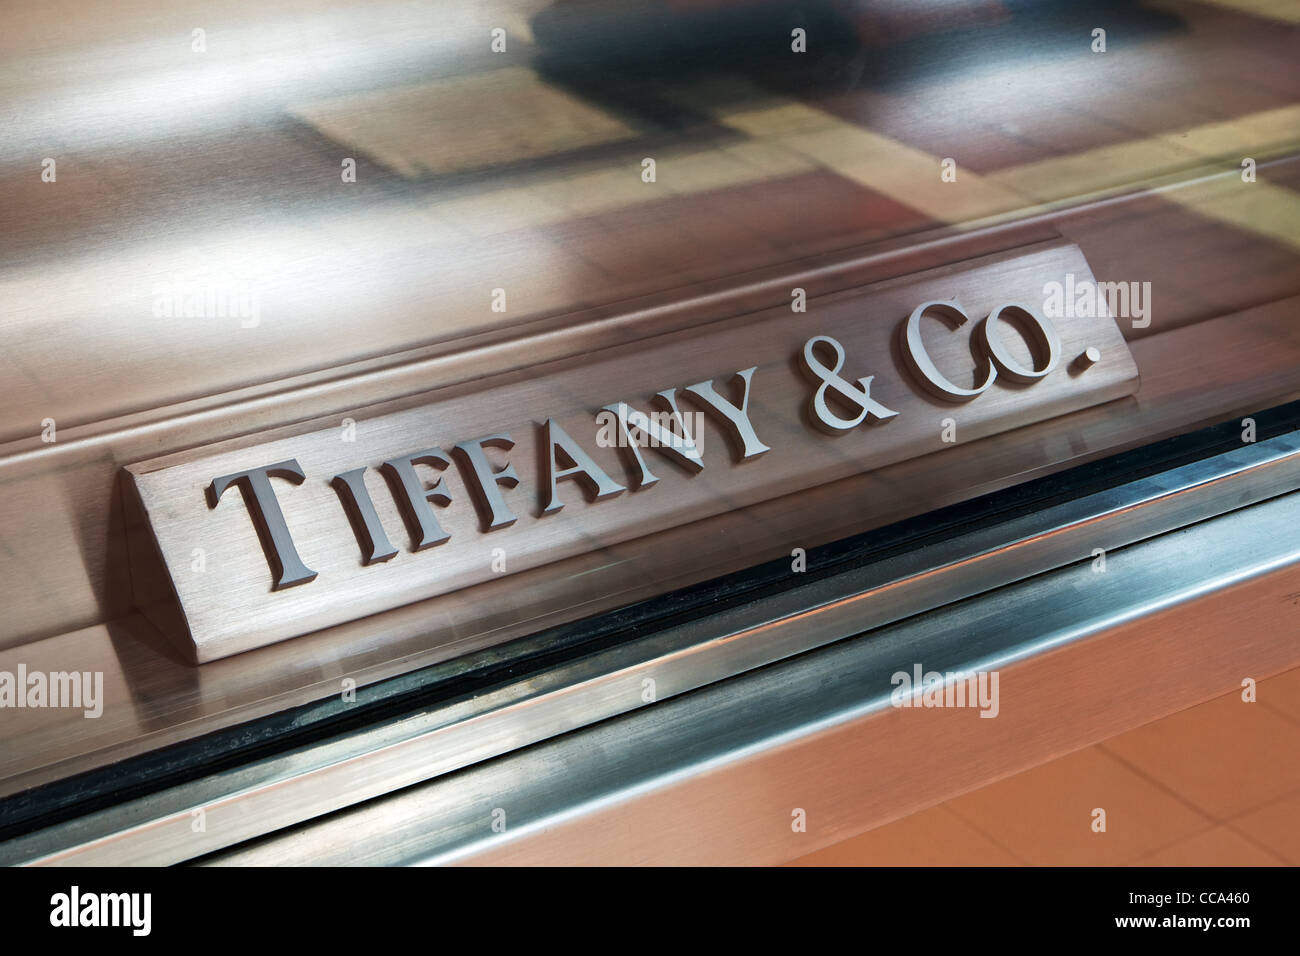 Tiffany & Co. firmar en el escaparate de una tienda de joyas Tiffany Foto de stock